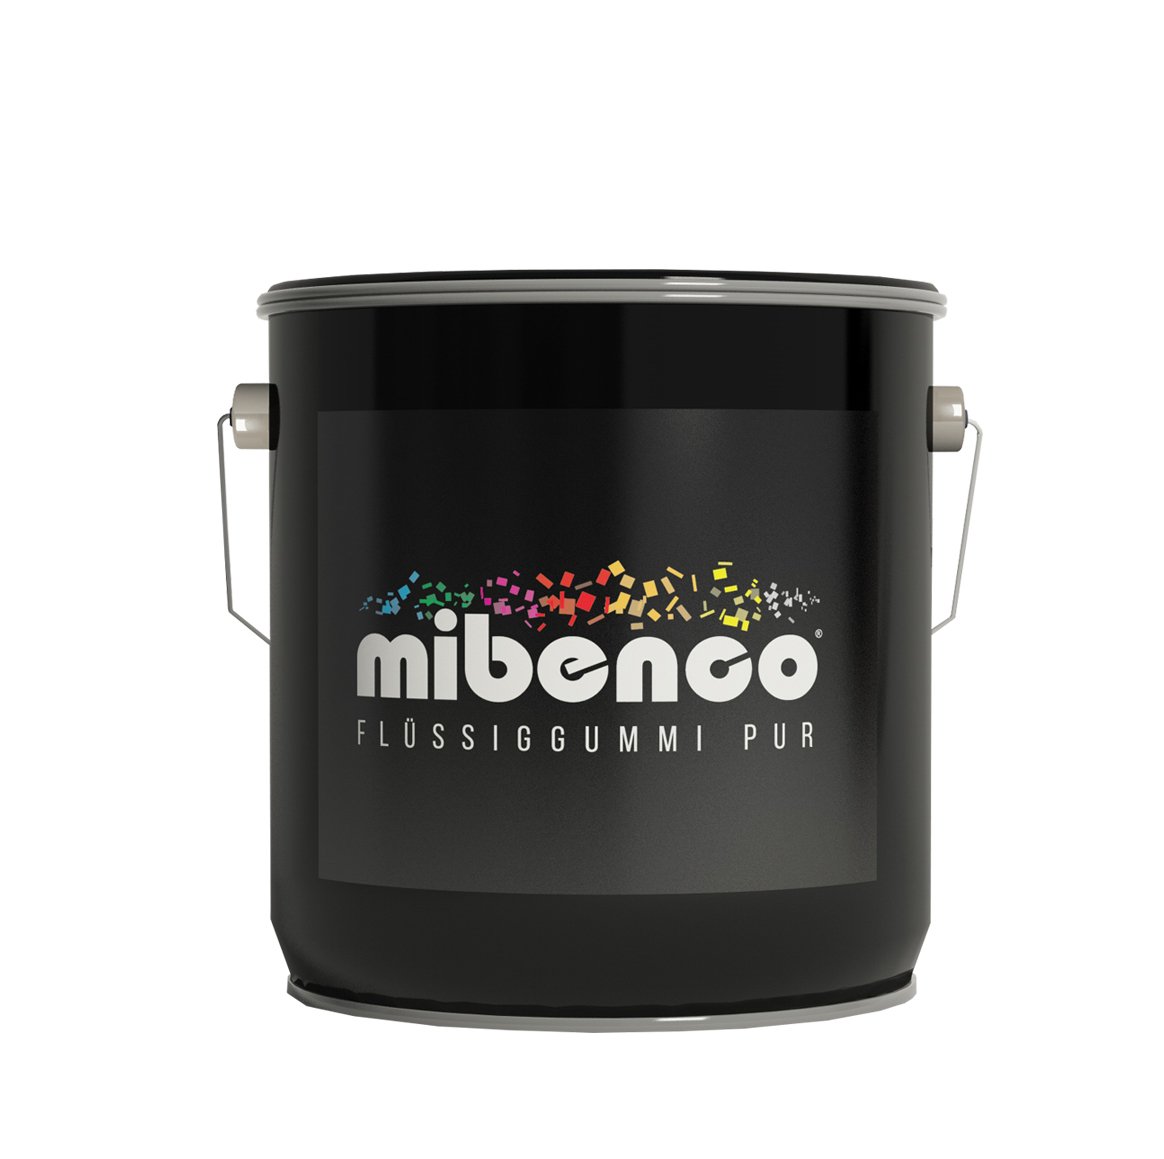 mibenco 72320000 Flüssiggummi Pur, 3000 g, Klar Matt - Schutz und Isolation zum Tauchen und Pinseln